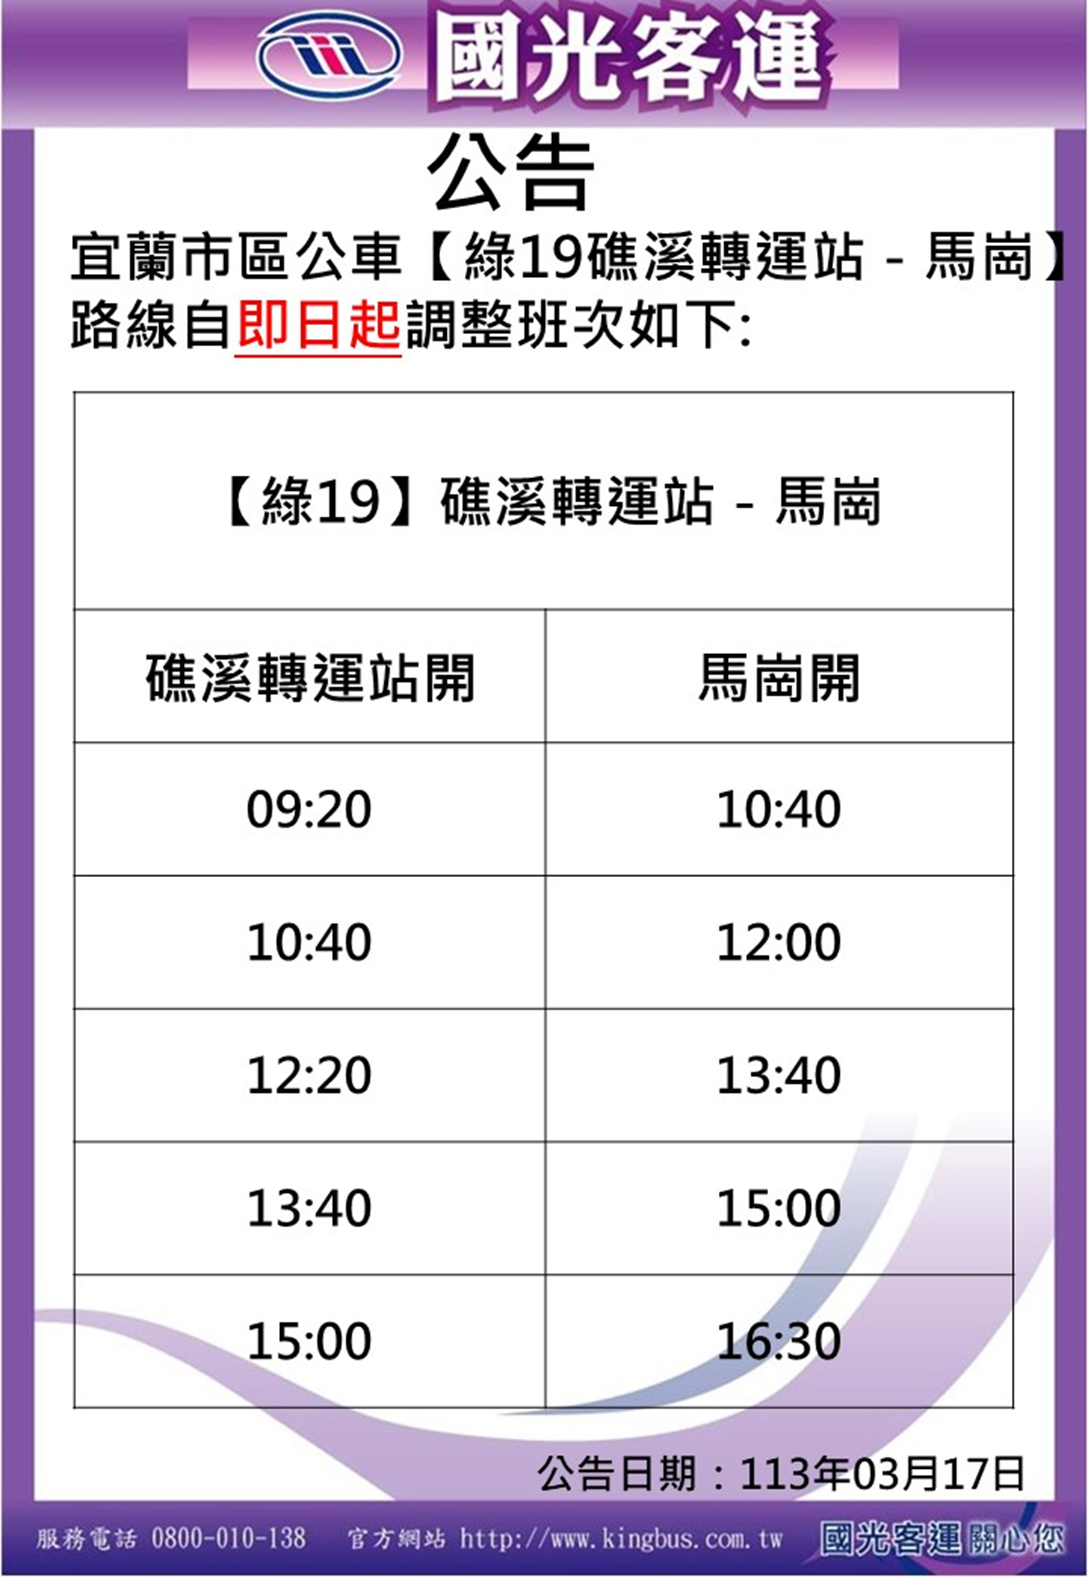 Тайвань Хао Син Грин 19: изменения в расписании автобусов вдоль береговой линии в северо-восточном углу Иланя.